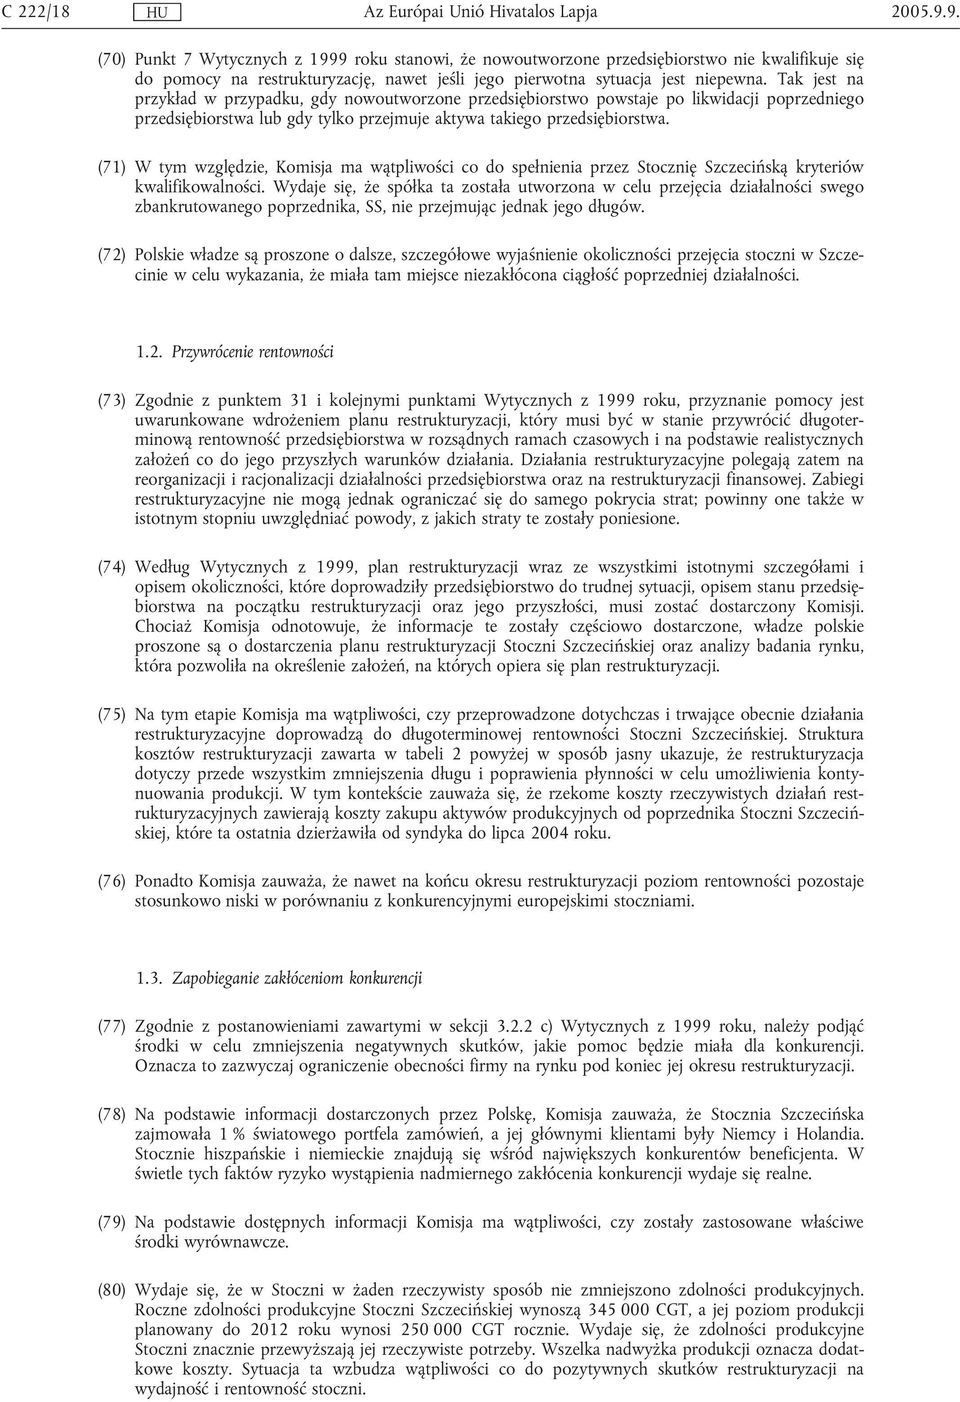 (71) W tym względzie, Komisja ma wątpliwości co do spełnienia przez Stocznię Szczecińską kryteriów kwalifikowalności.